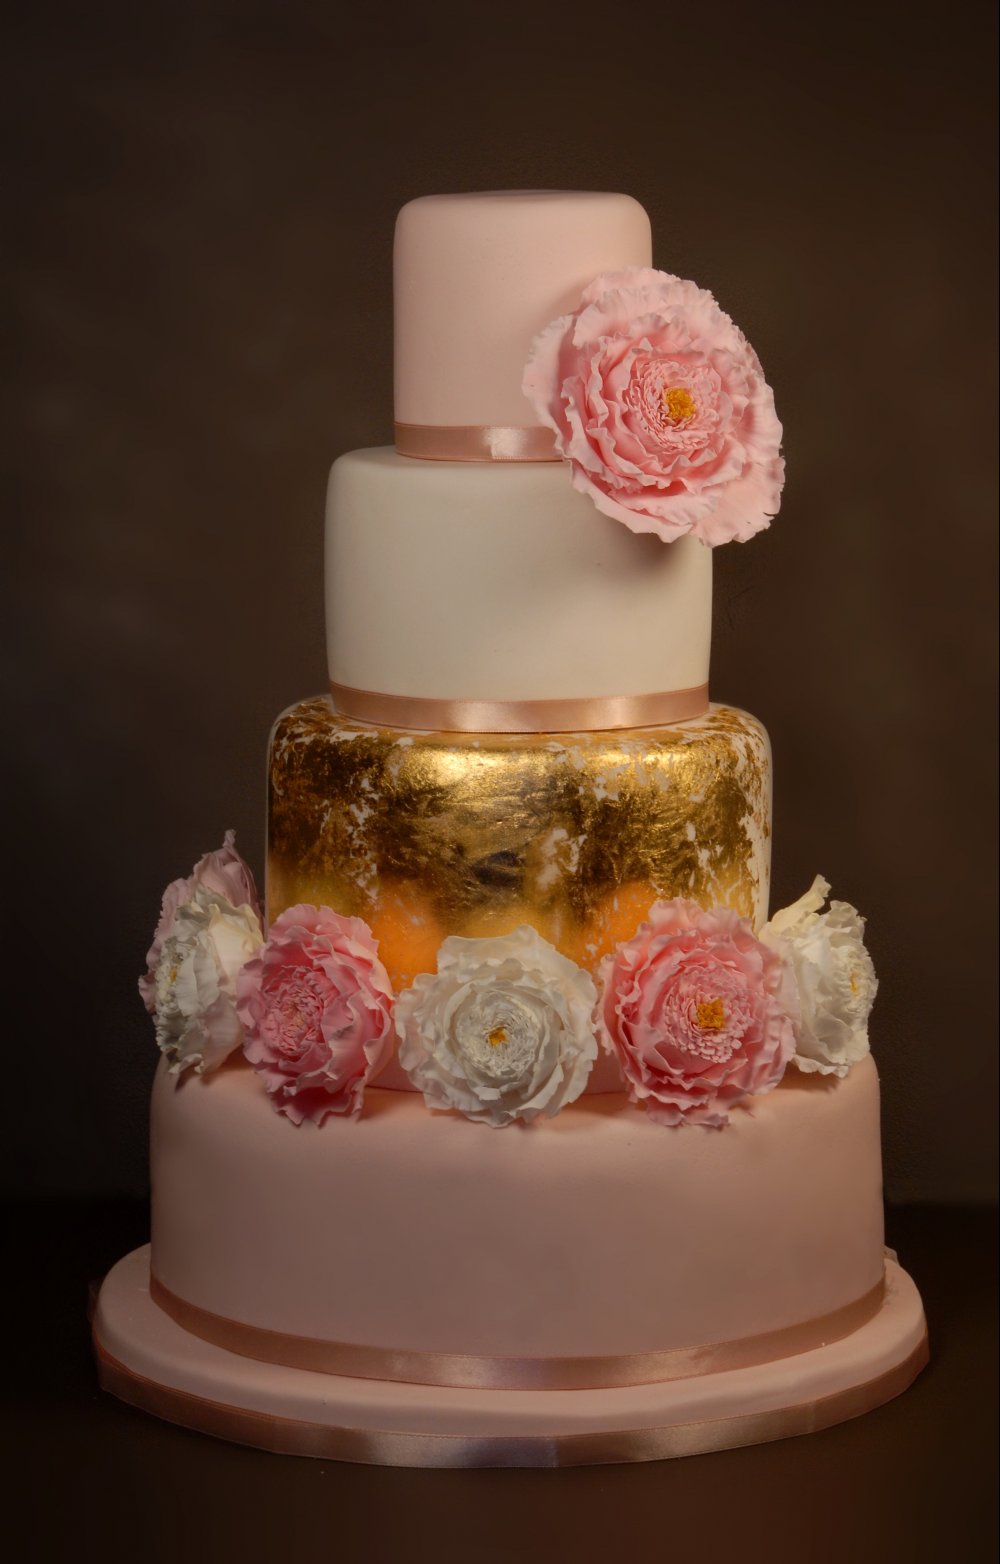 Эффектный торт, украшенный кудрявыми сахарными розами и пищевым 24-каратным золотом